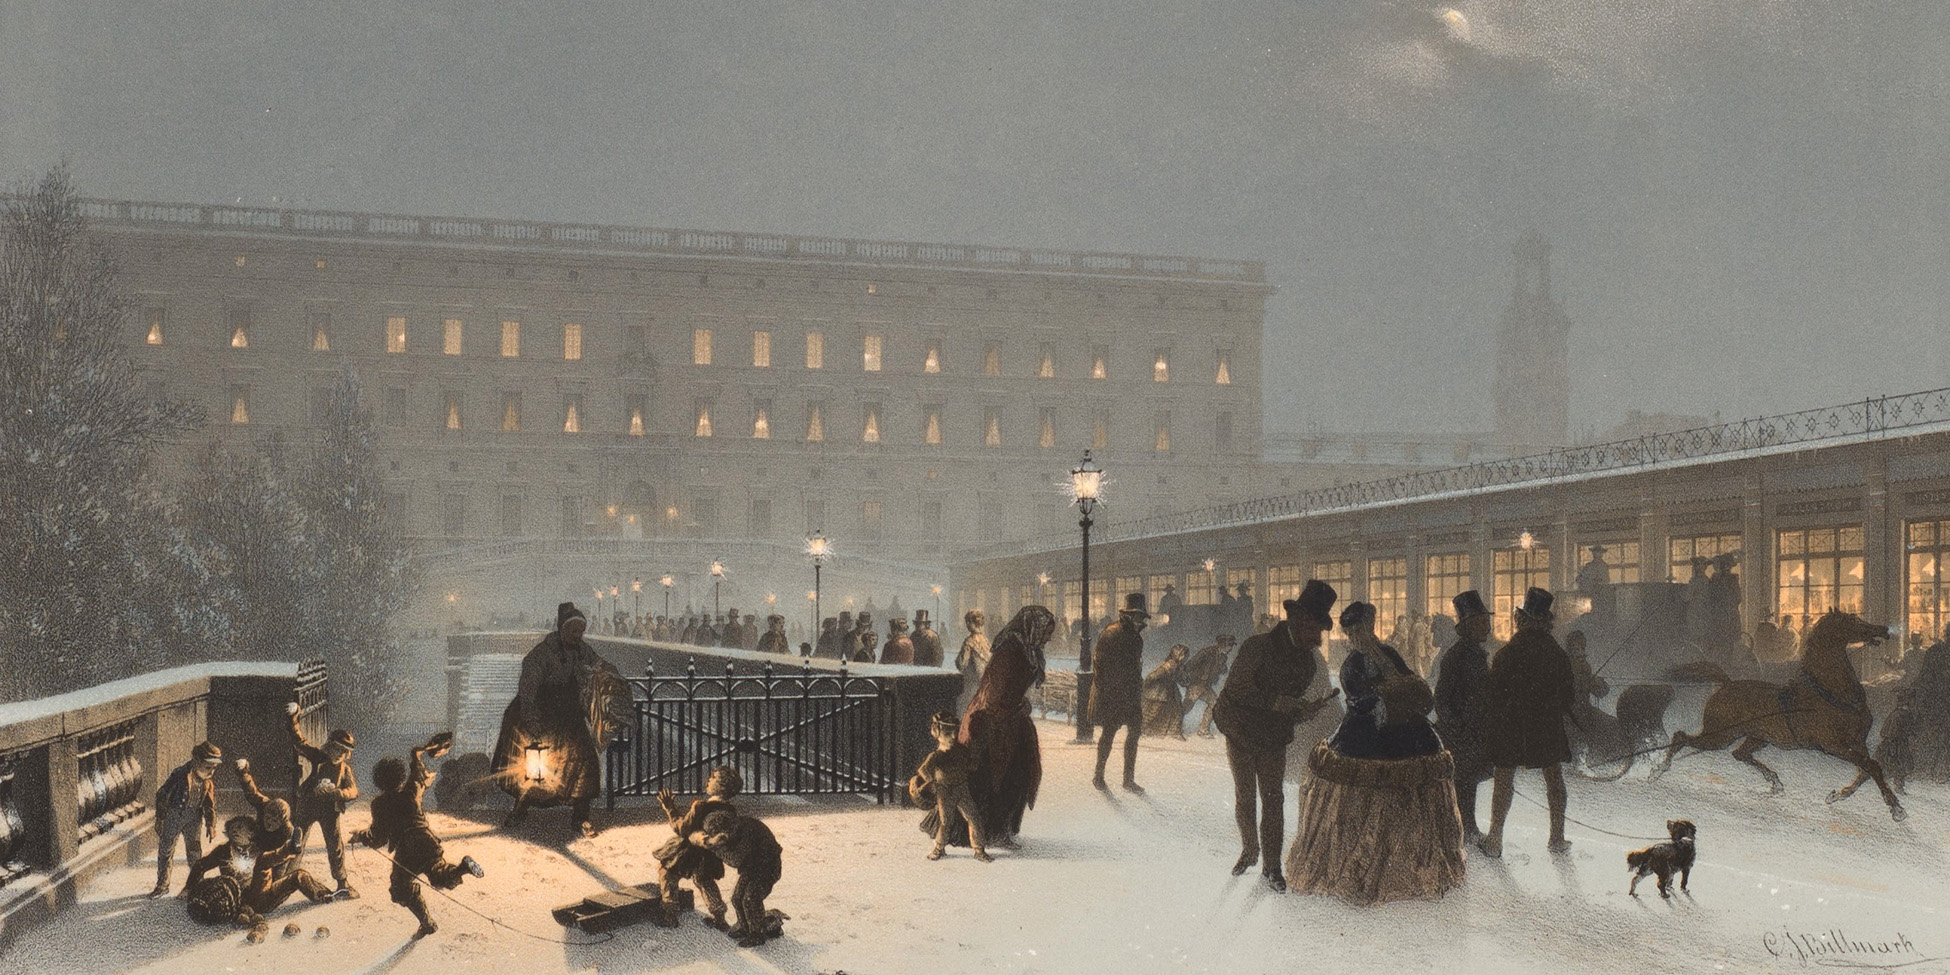 En illustration av en snötäckt stadsgata befolkad av finklädda människor en kväll.